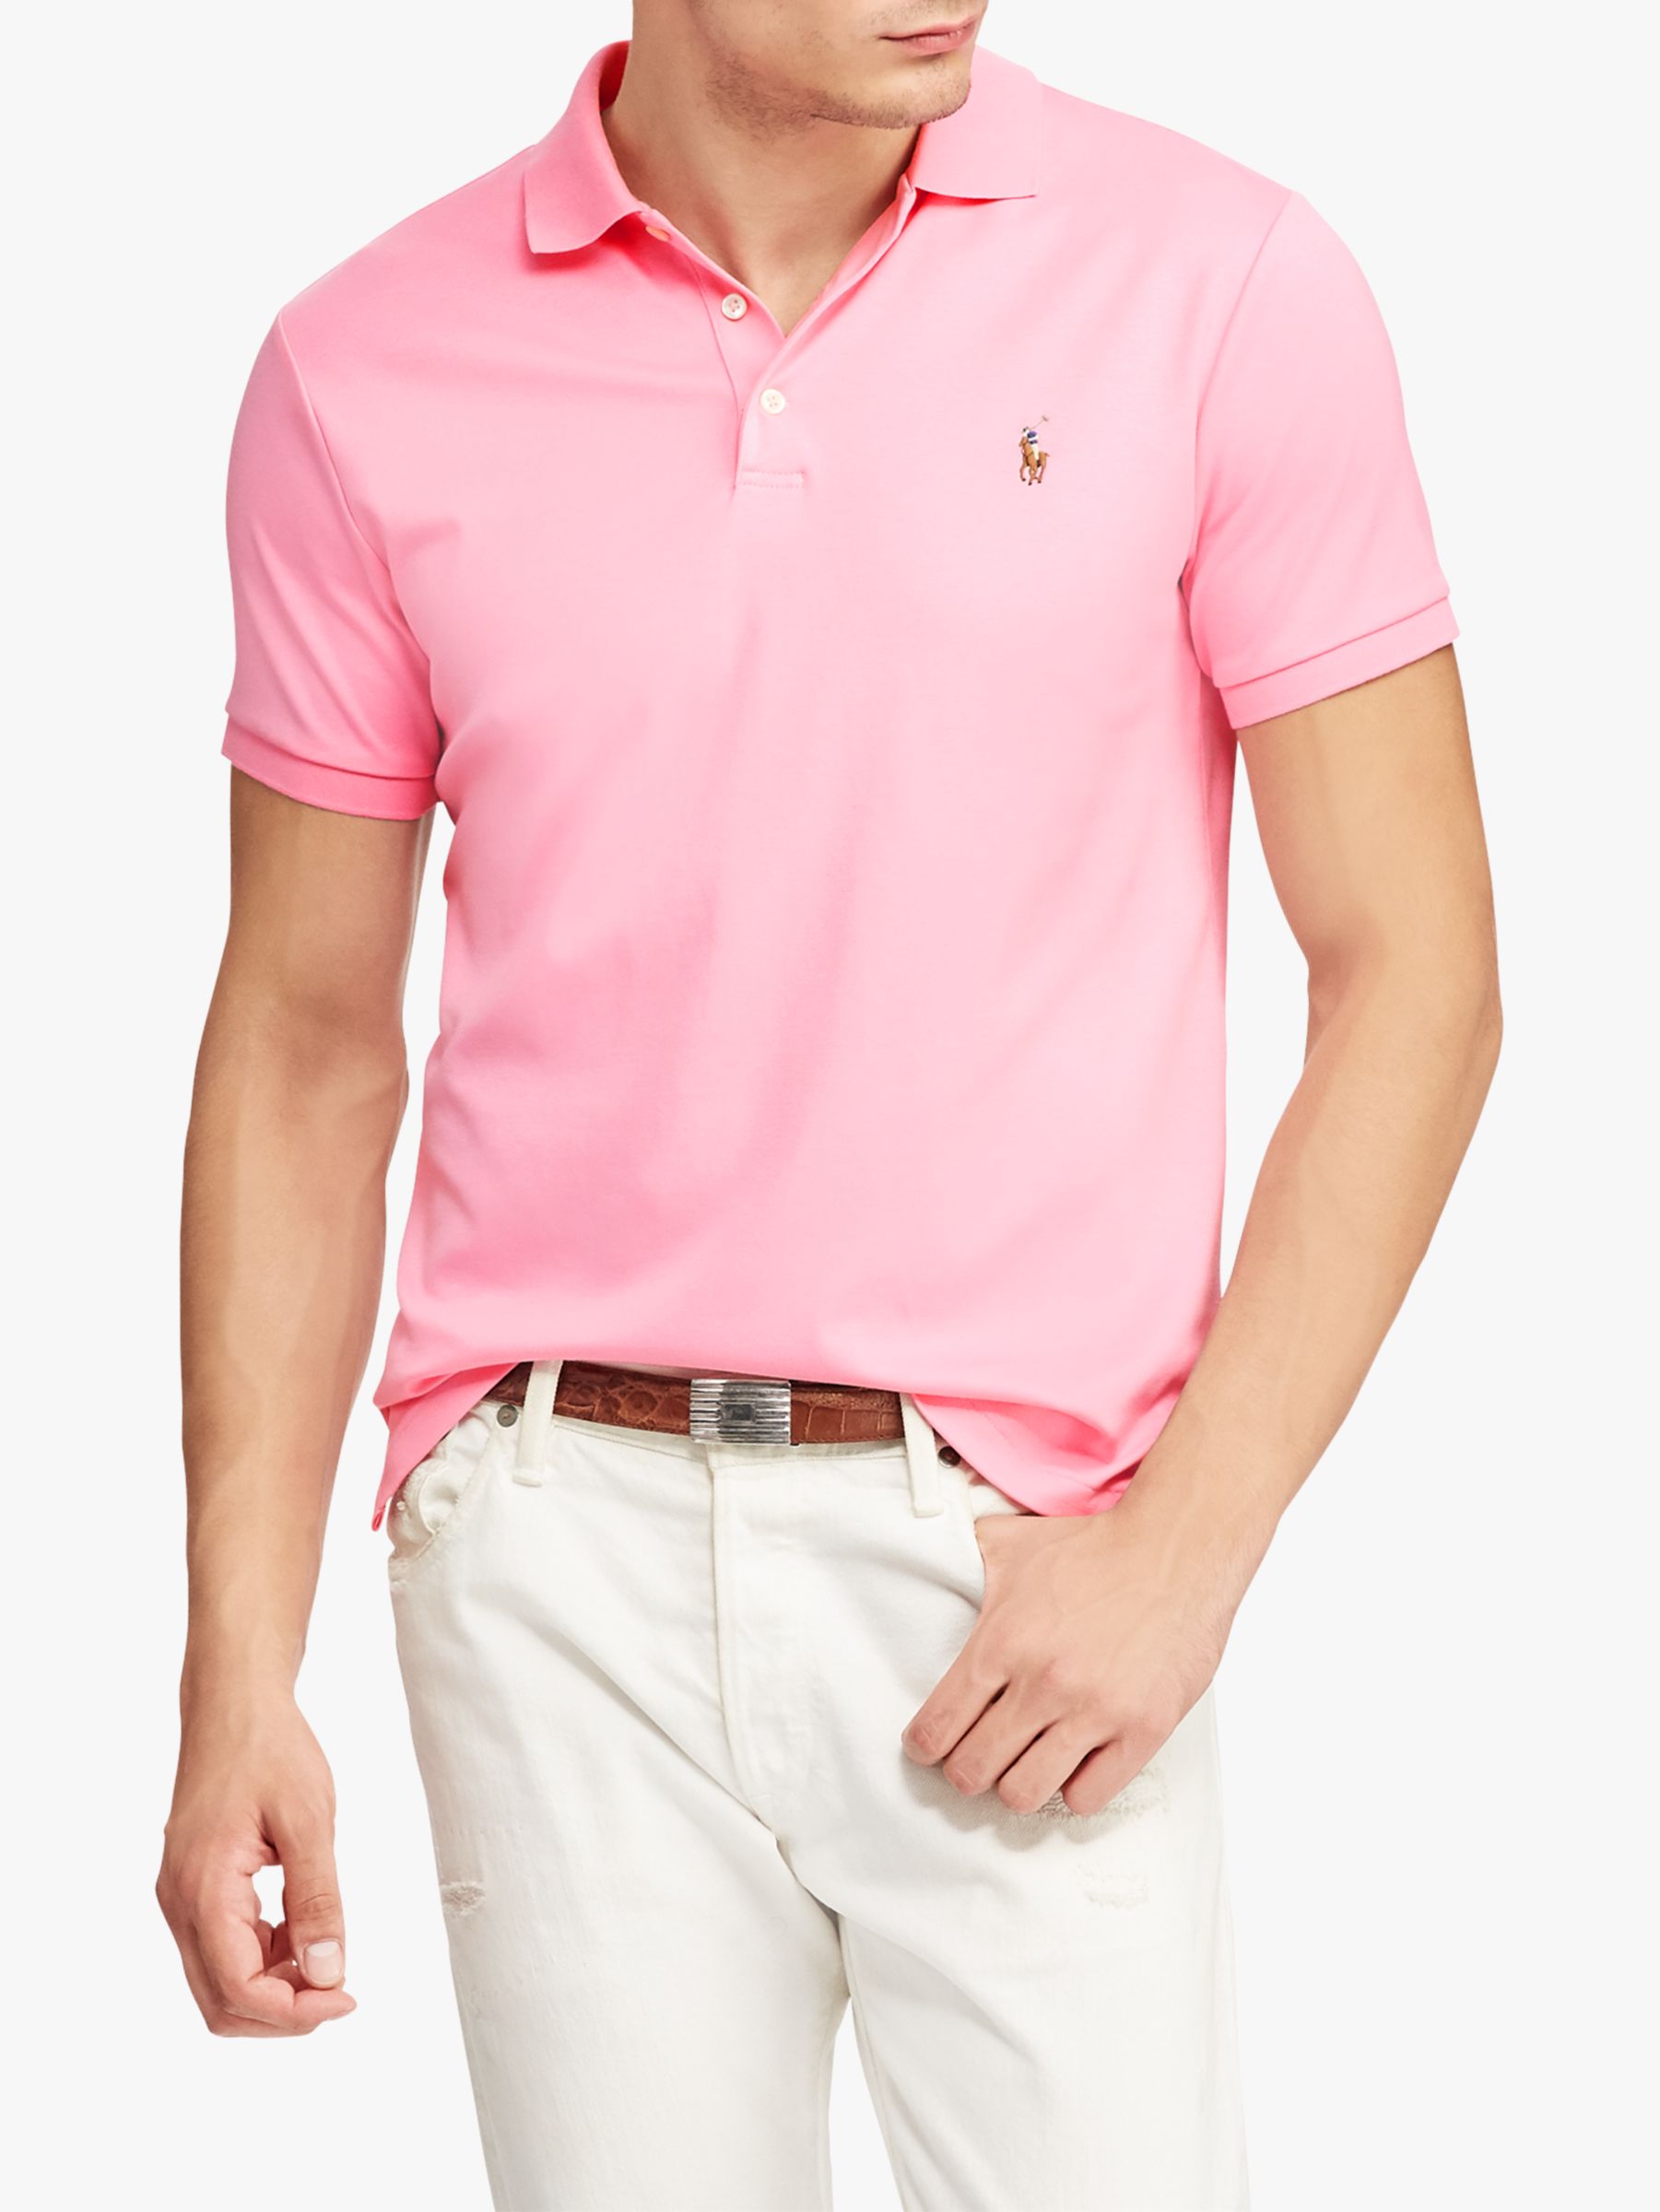 pink polo shirts ralph lauren